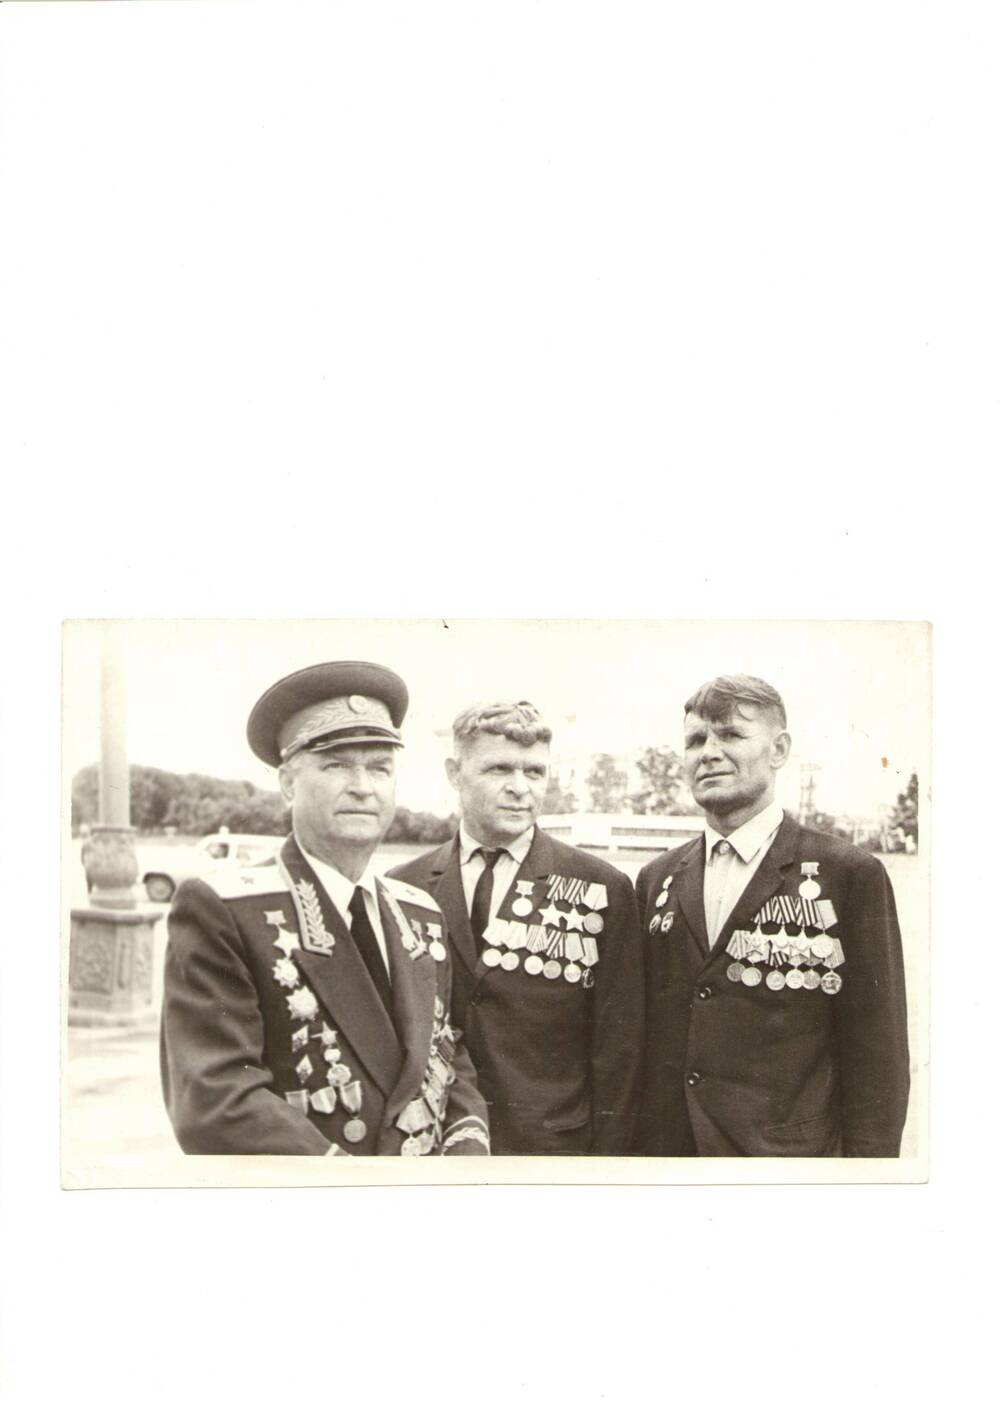 Фото черно-белое, групповое, поясное ветеранов 27-й гвардейской стрелковой дивизии, принимавших участие в боях по освобождению  Калачевского района, 1970